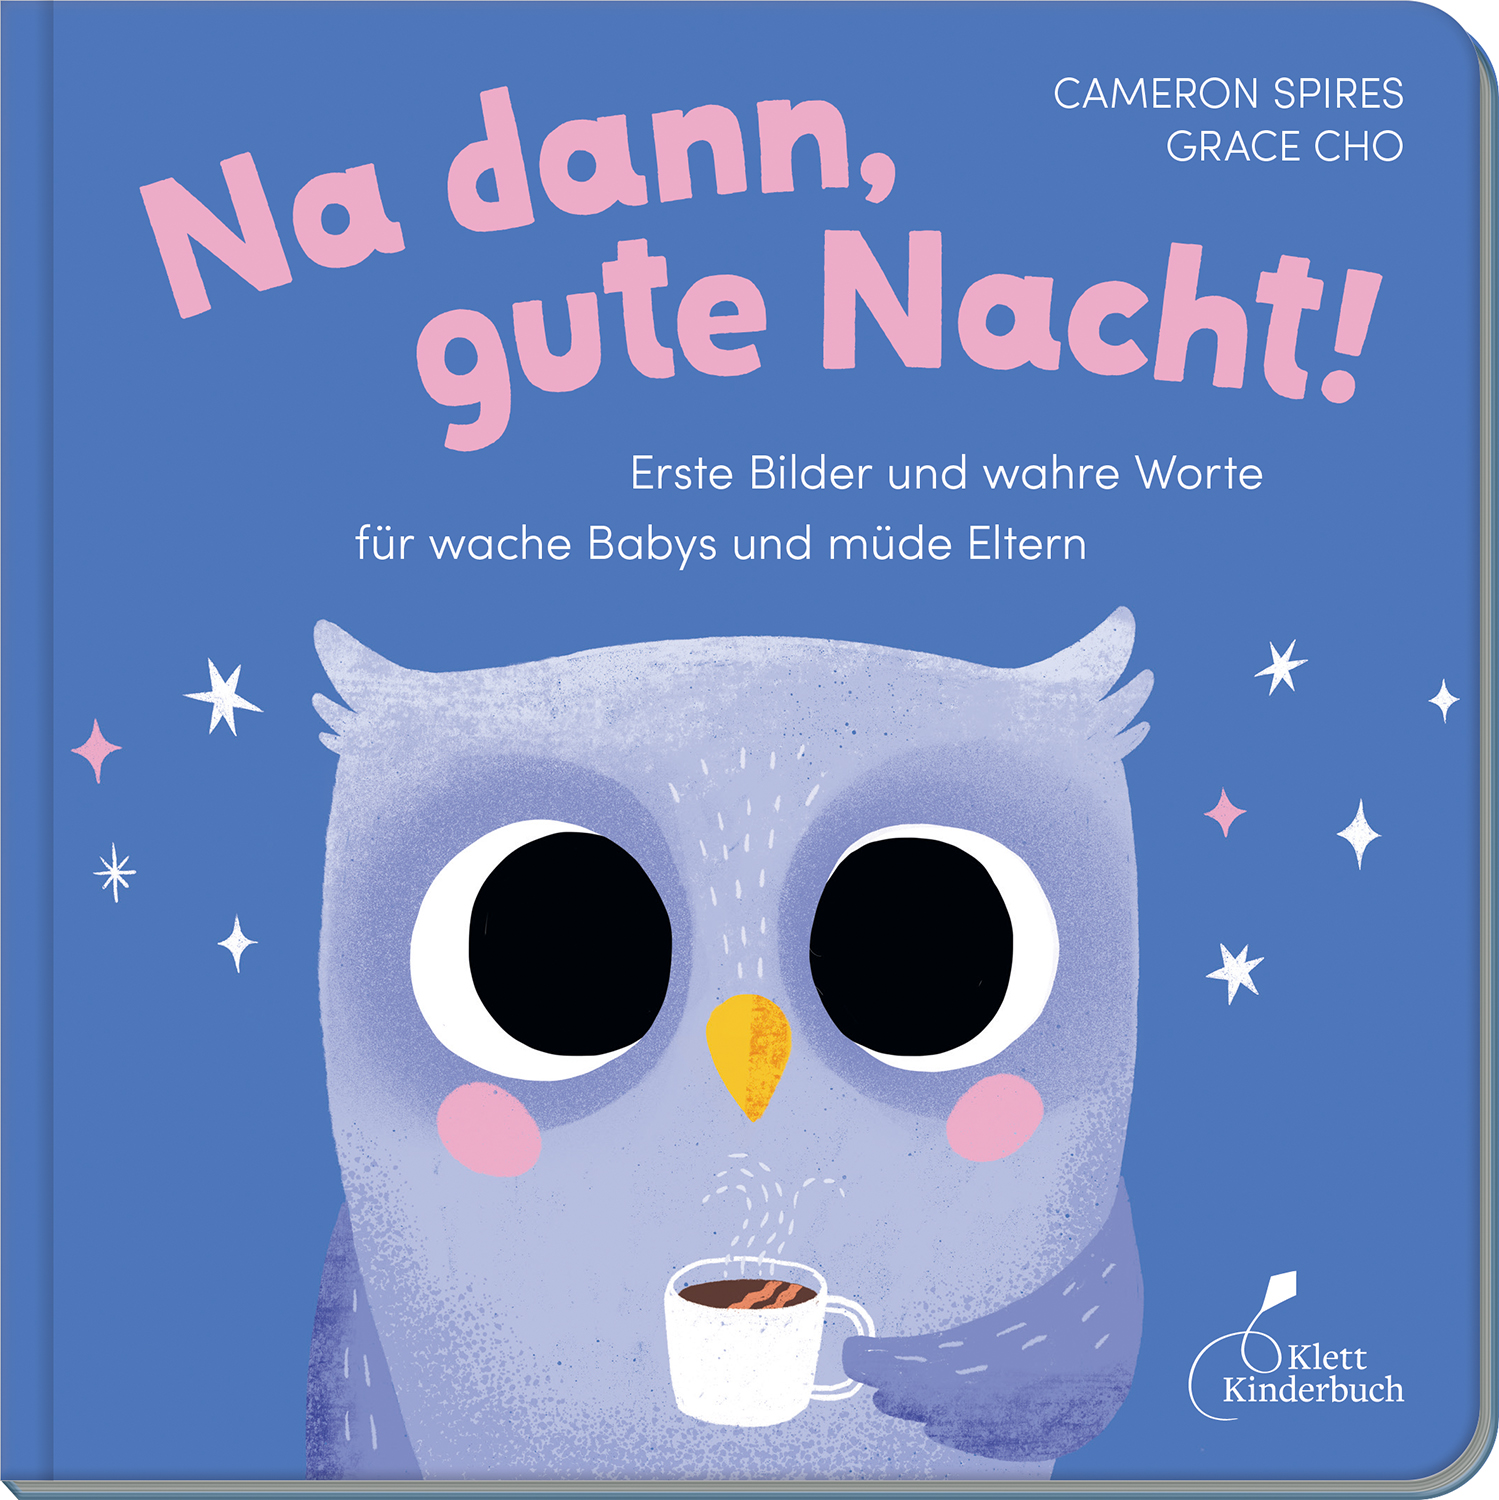 Radieschen von unten - Klett Kinderbuch Verlag GmbH